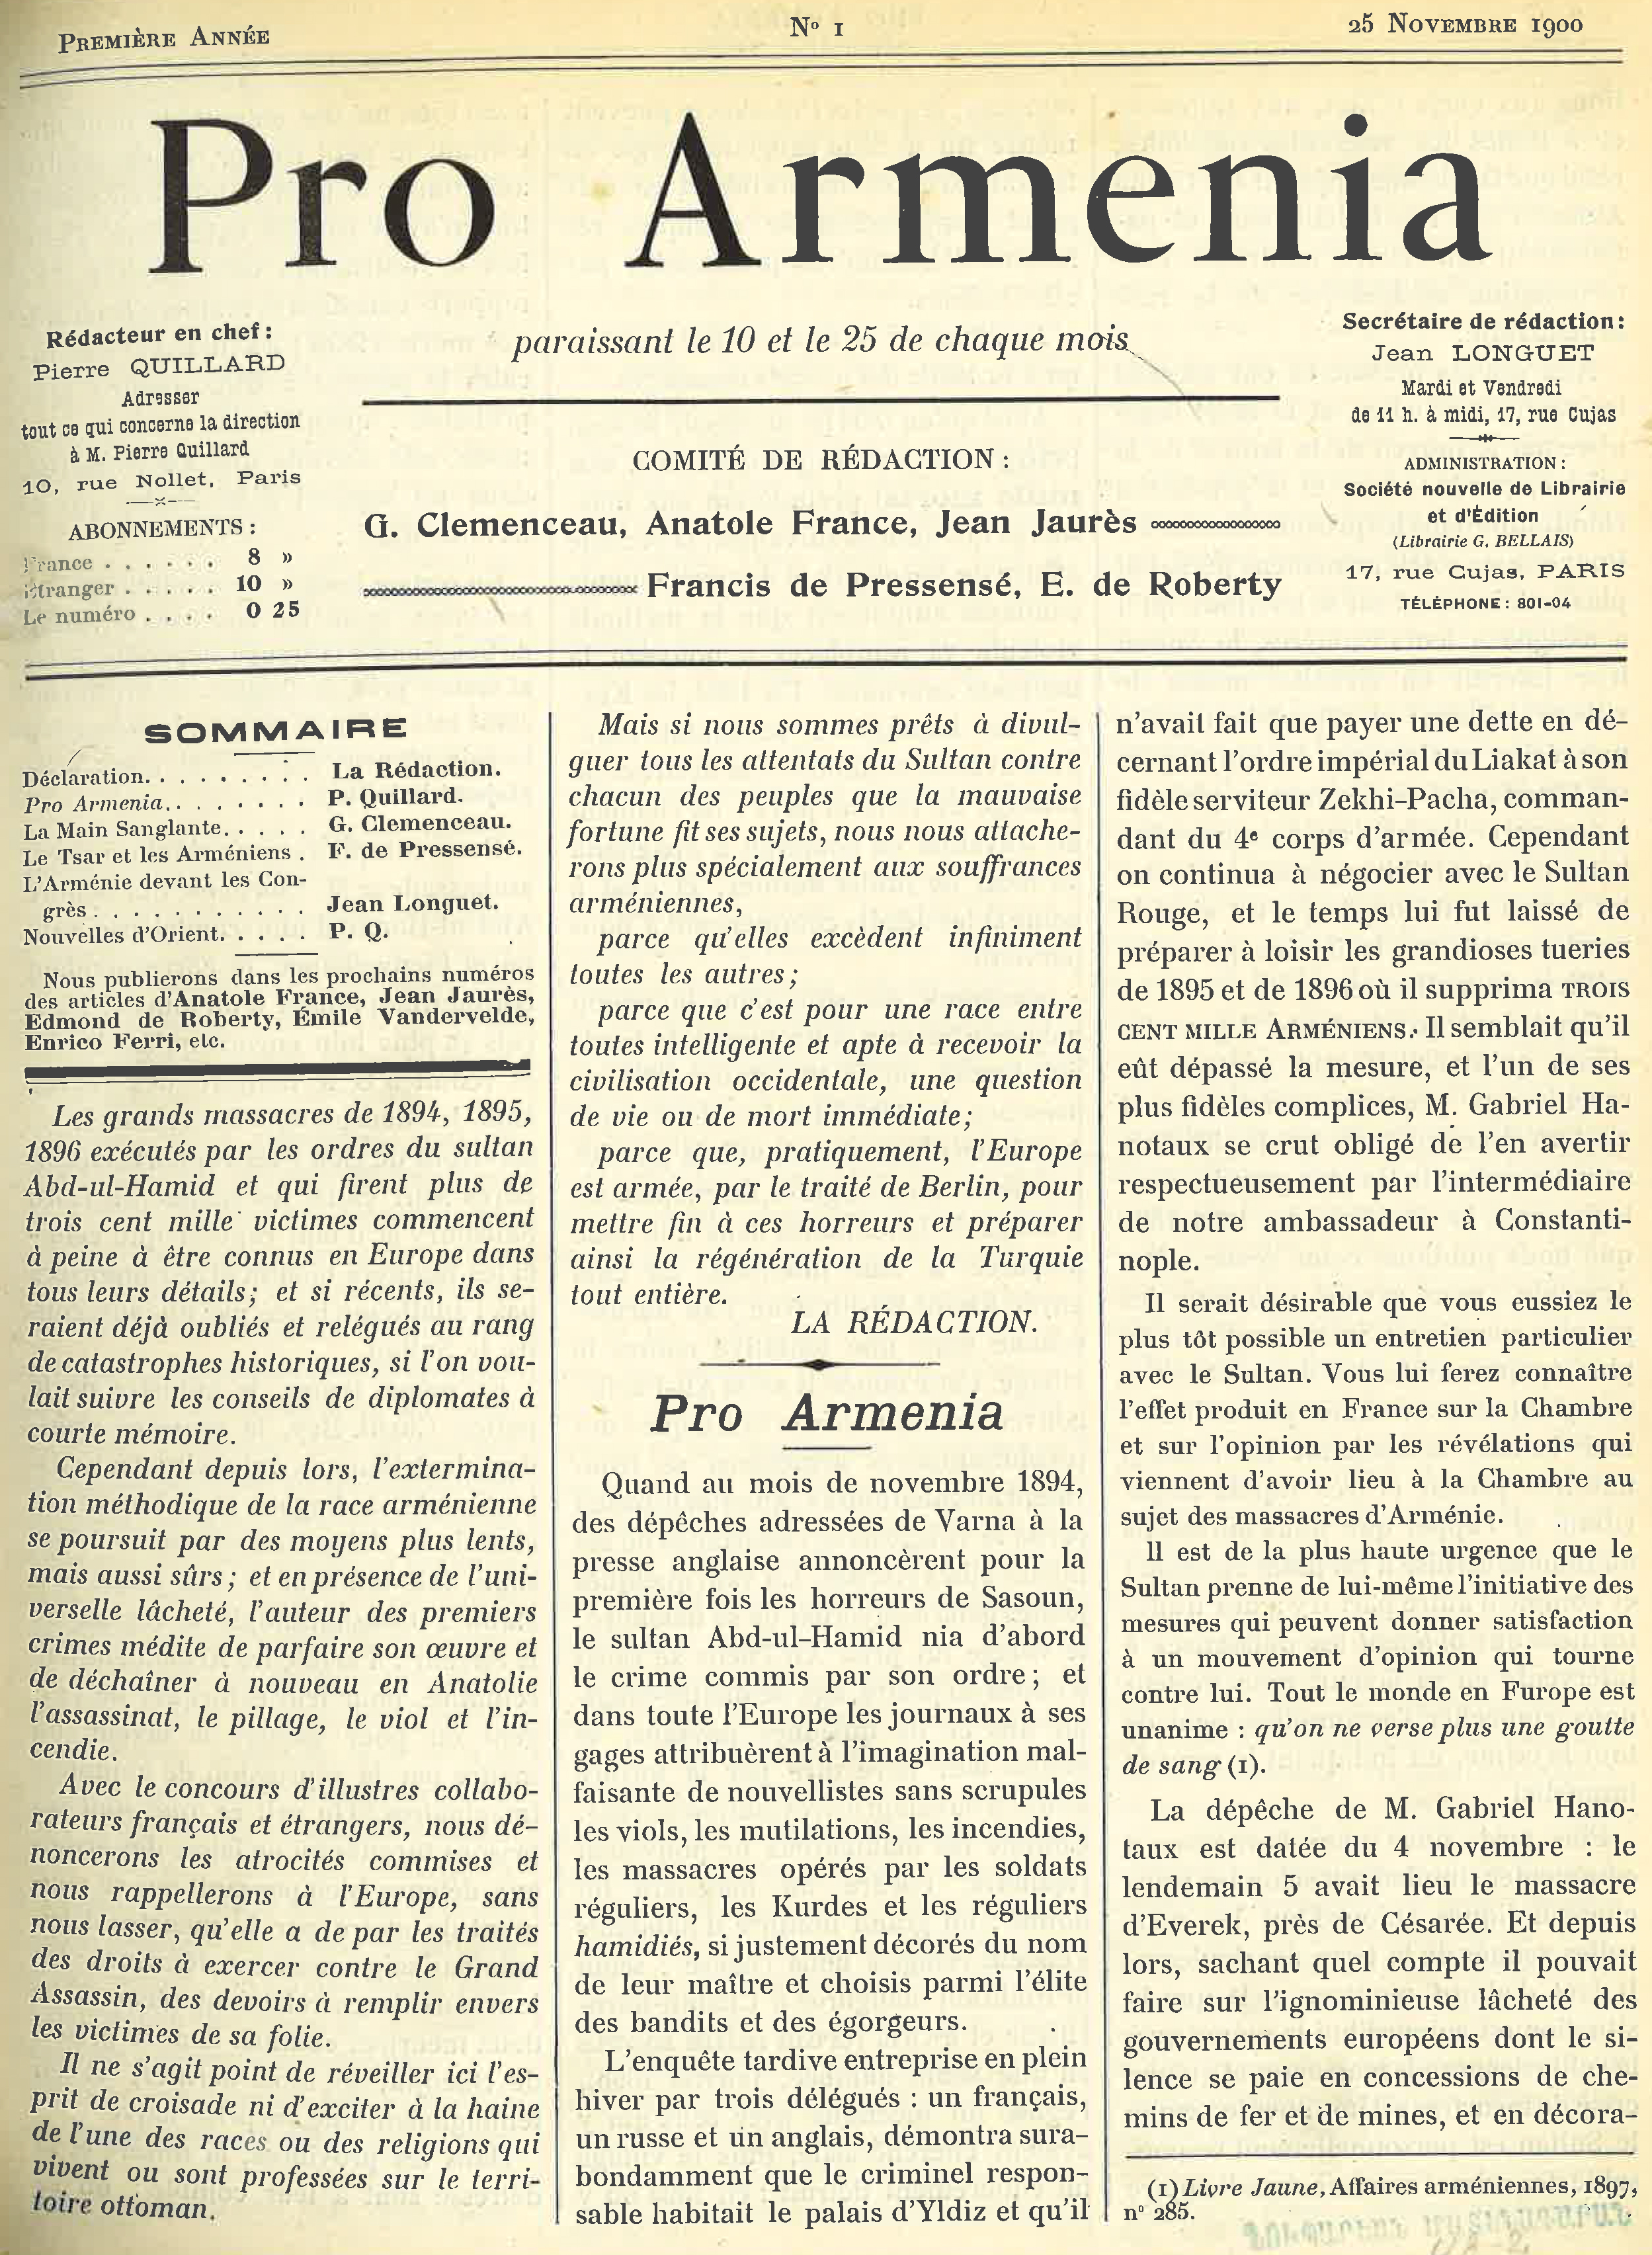 Éditorial de la rédaction du premier numéro du journal bimensuel Pro Armenia, 25 novembre 1900